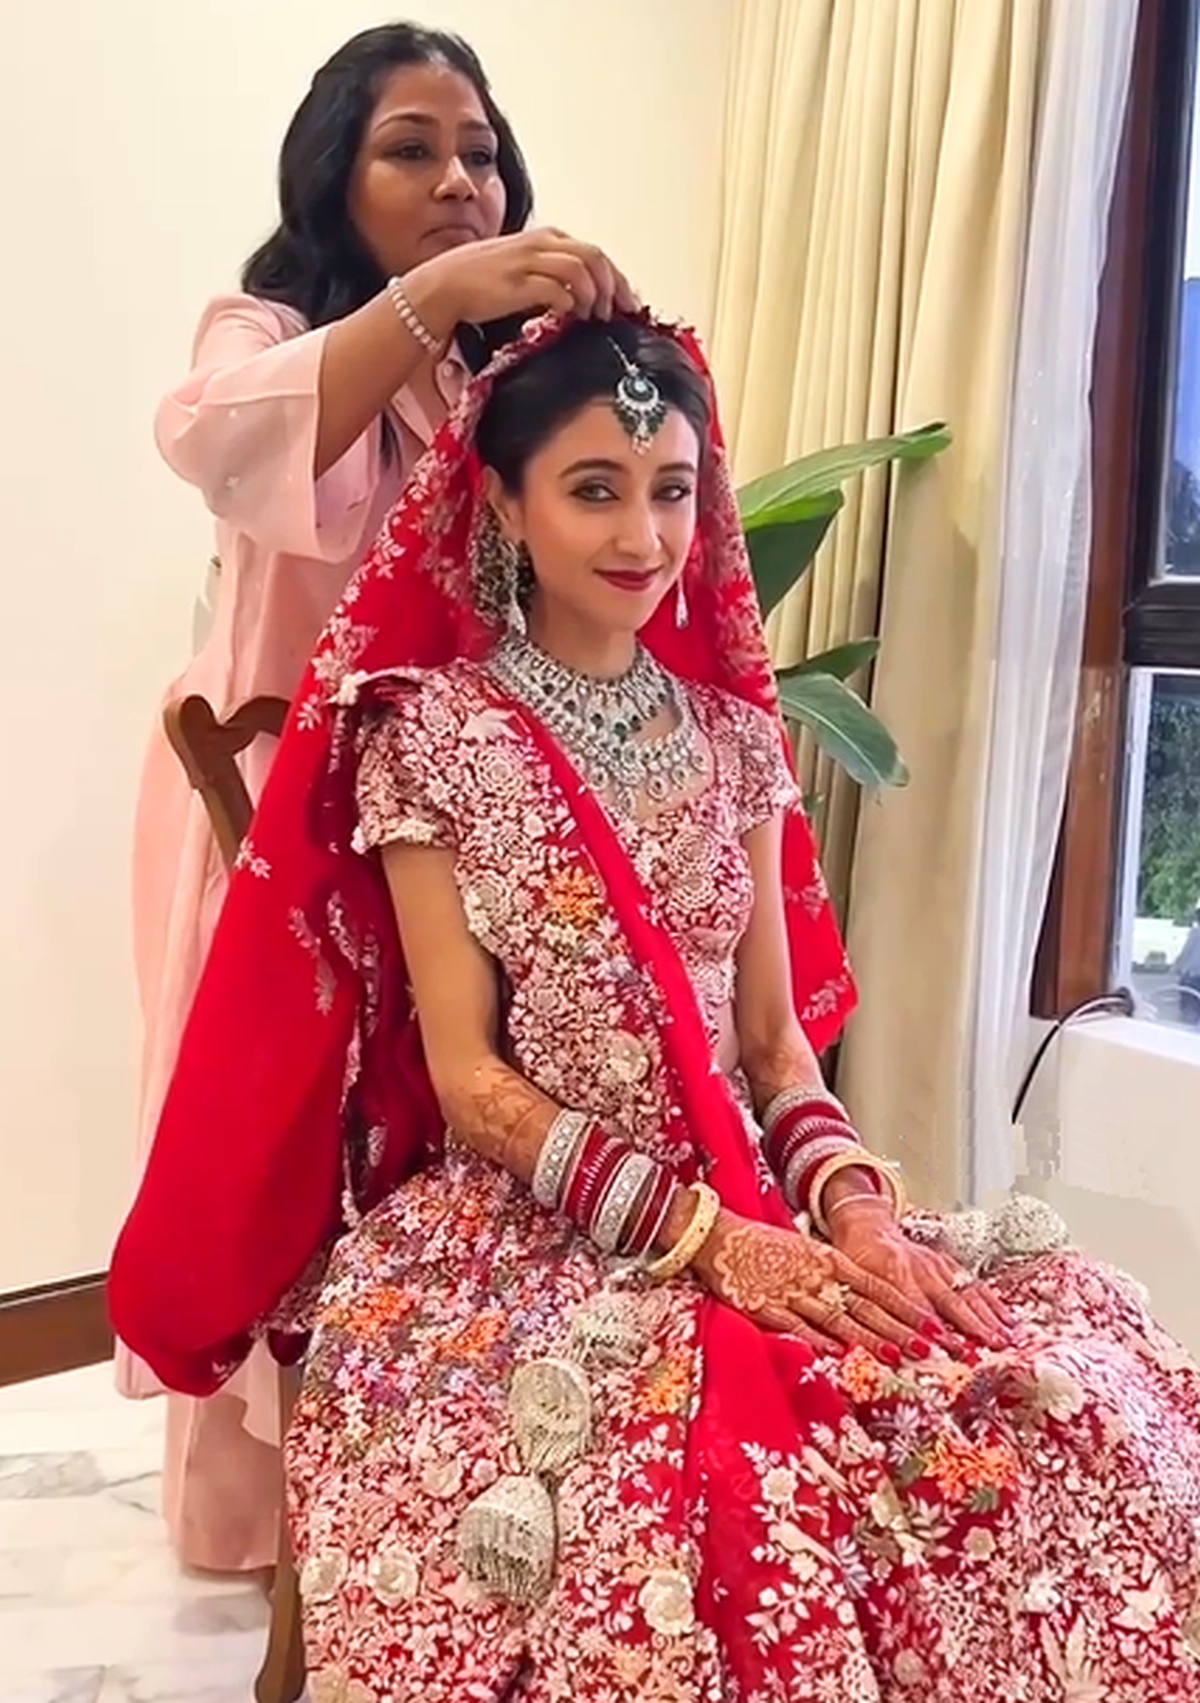 Mukesh Ambani's daughter Isha Ambani engagement photos! | Fashionworldhub